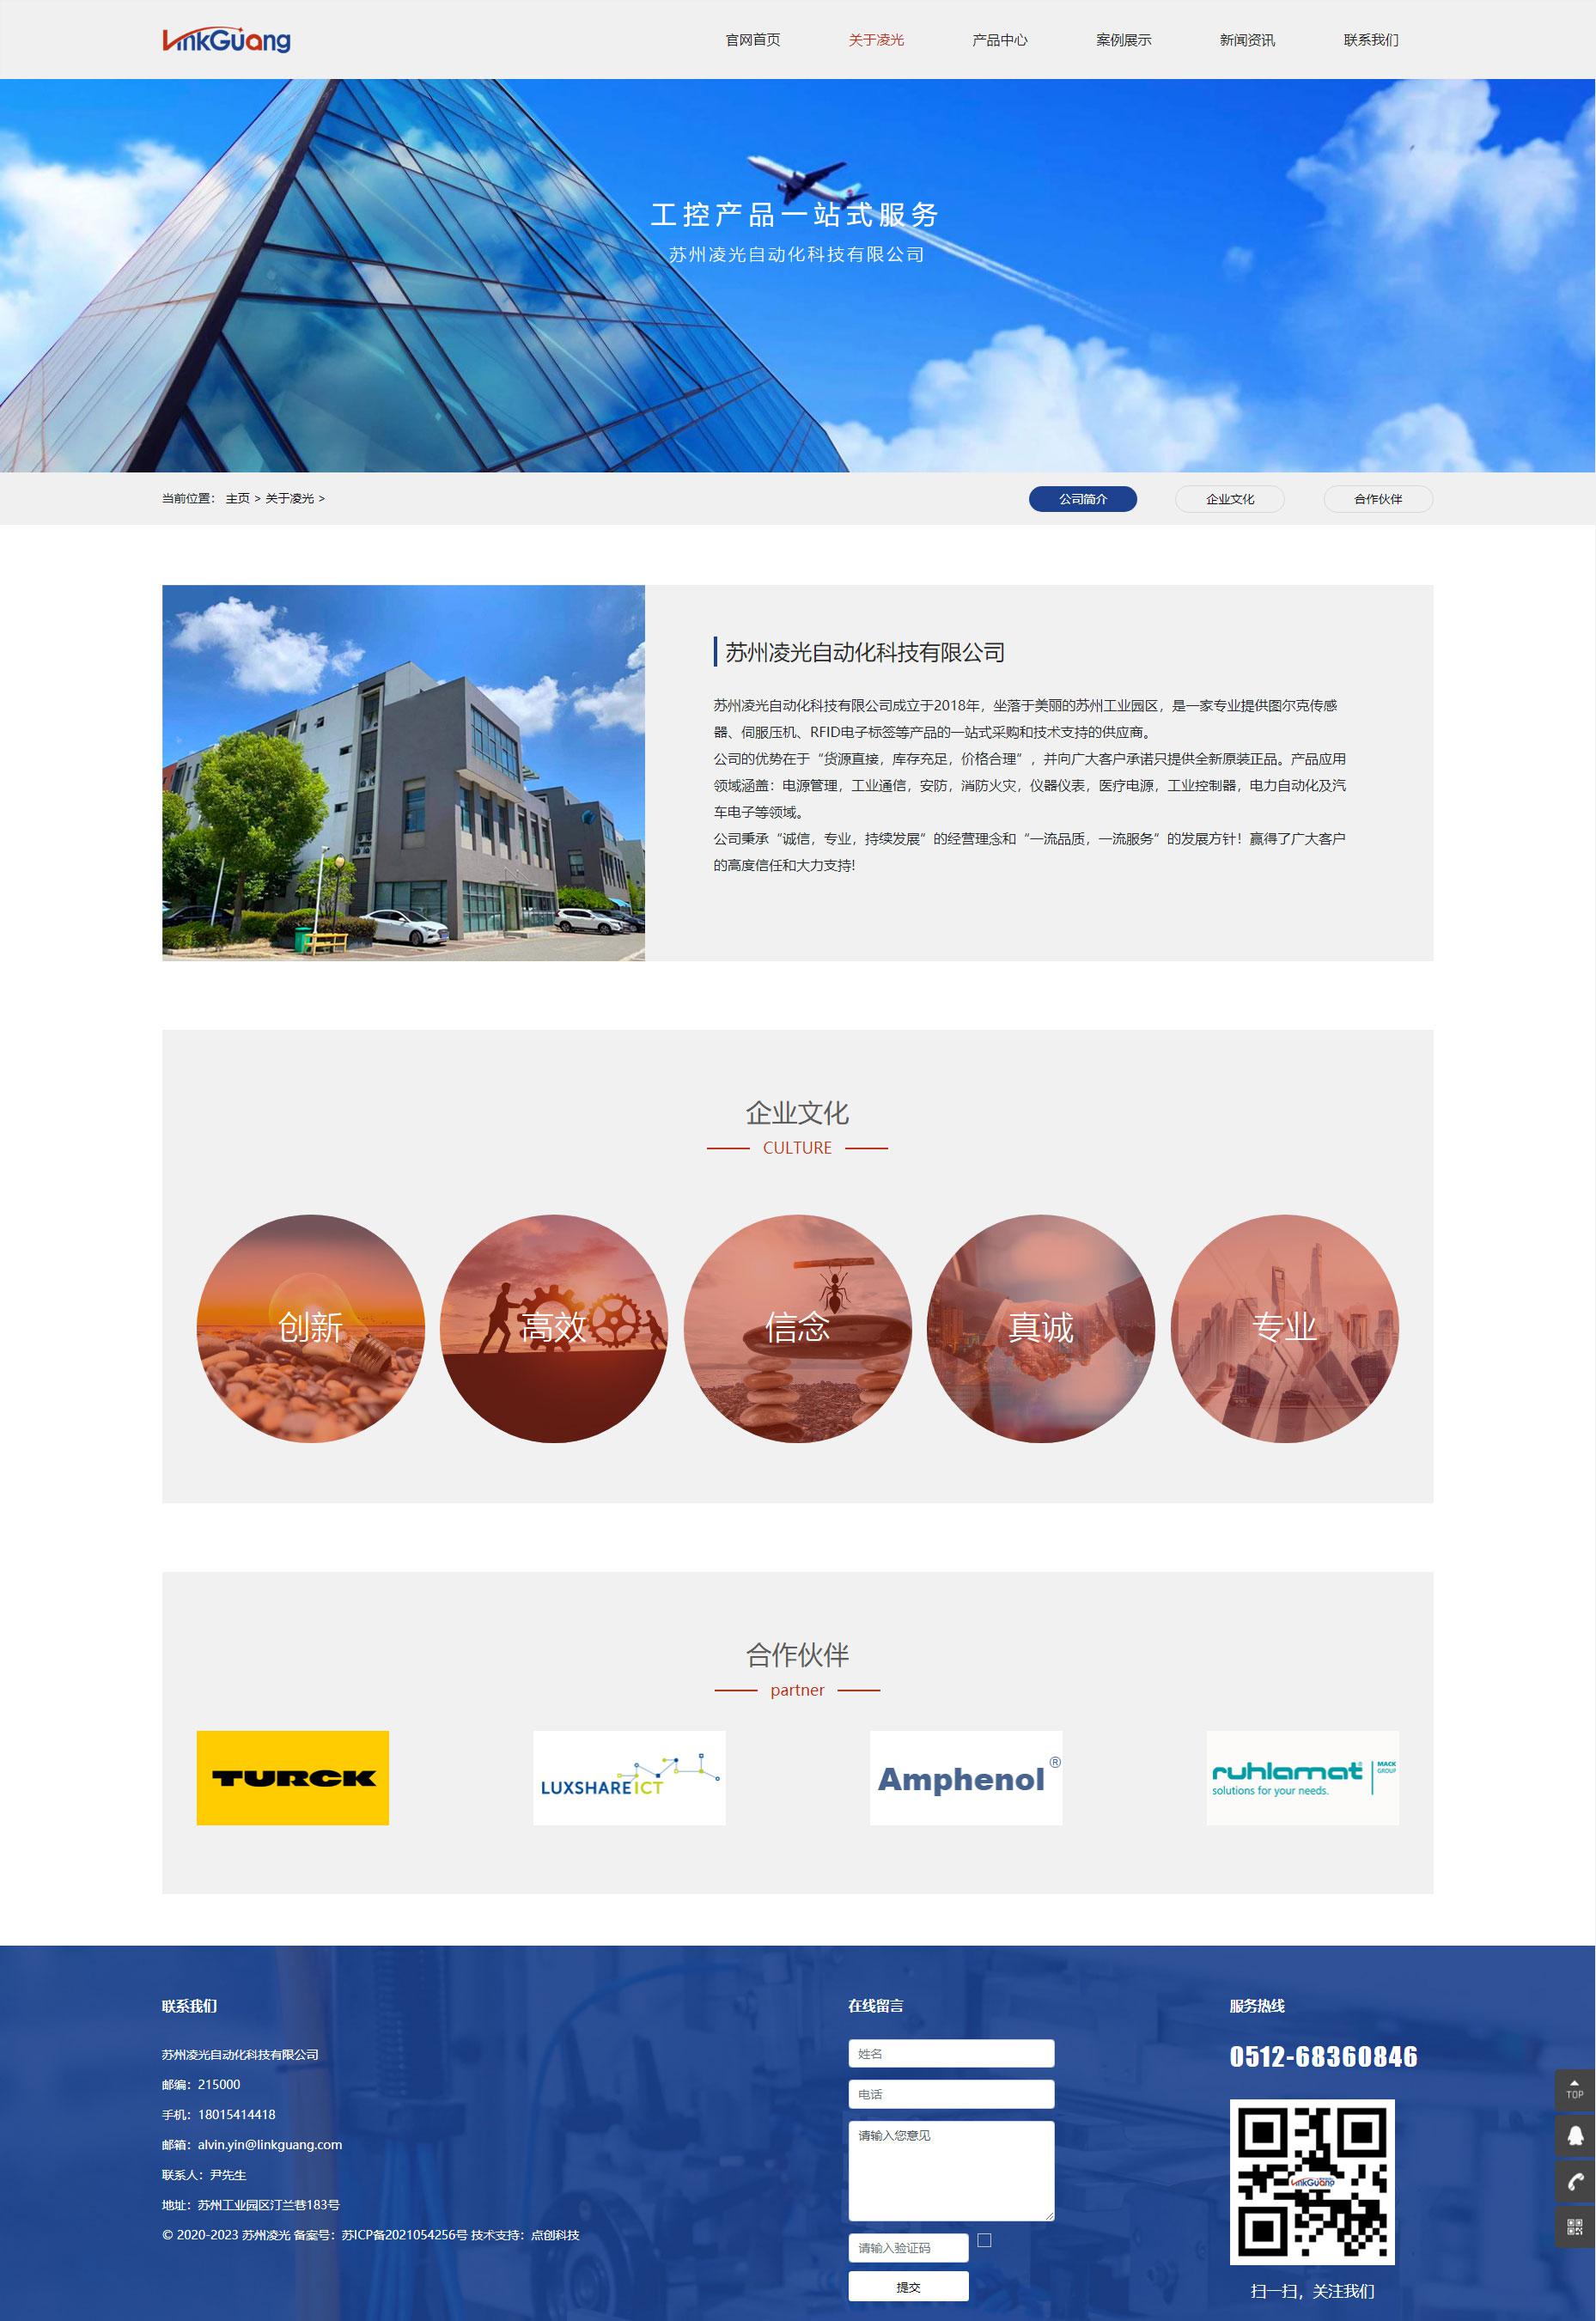 苏州网站建设公司为苏州凌光自动化科技有限公司设计的官网公司简介企业文化页面